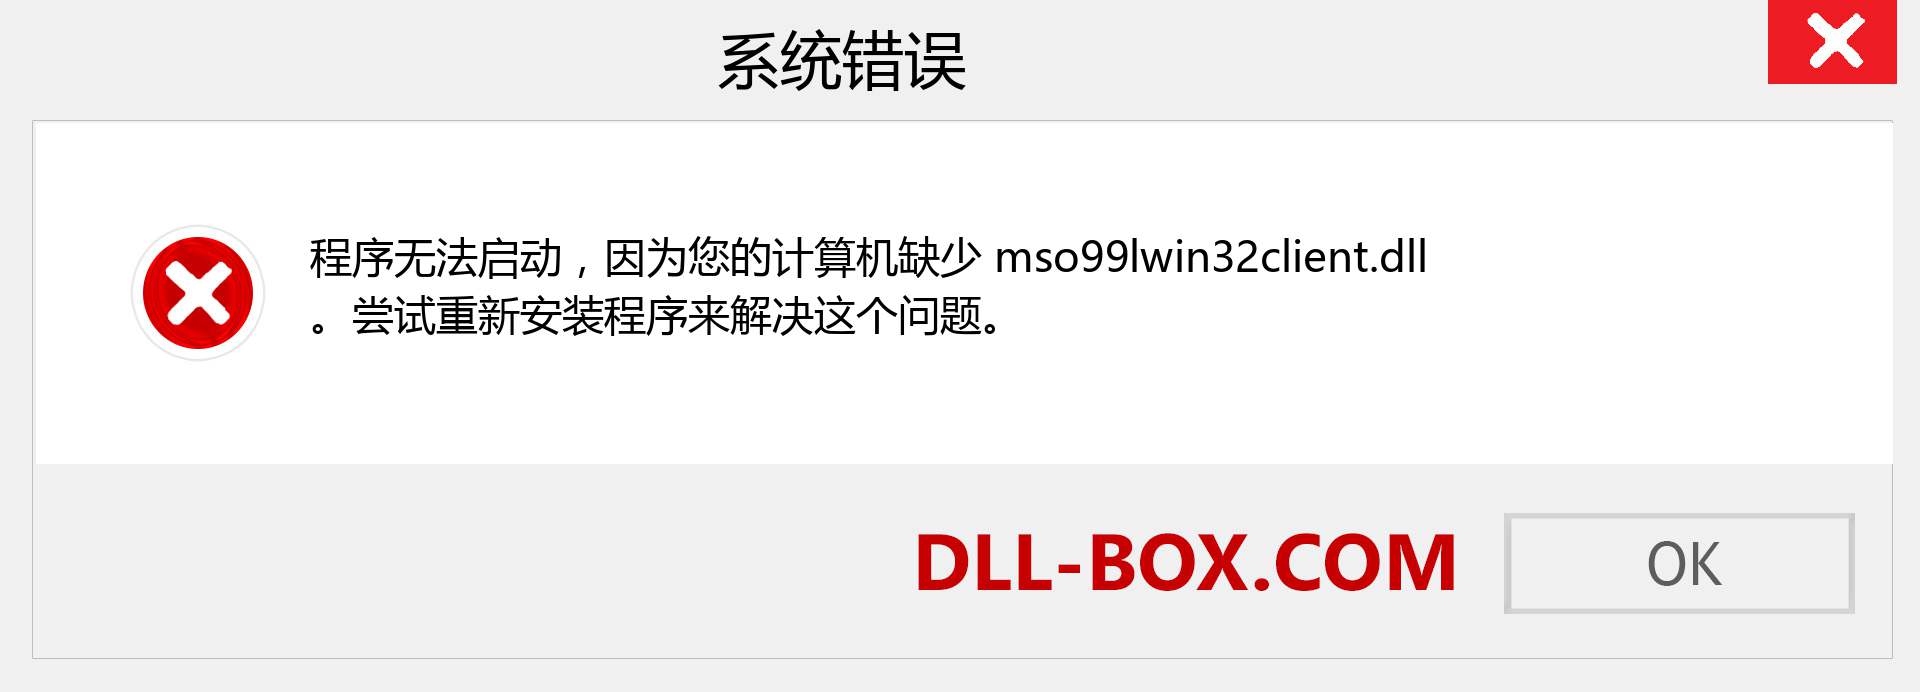 mso99lwin32client.dll 文件丢失？。 适用于 Windows 7、8、10 的下载 - 修复 Windows、照片、图像上的 mso99lwin32client dll 丢失错误